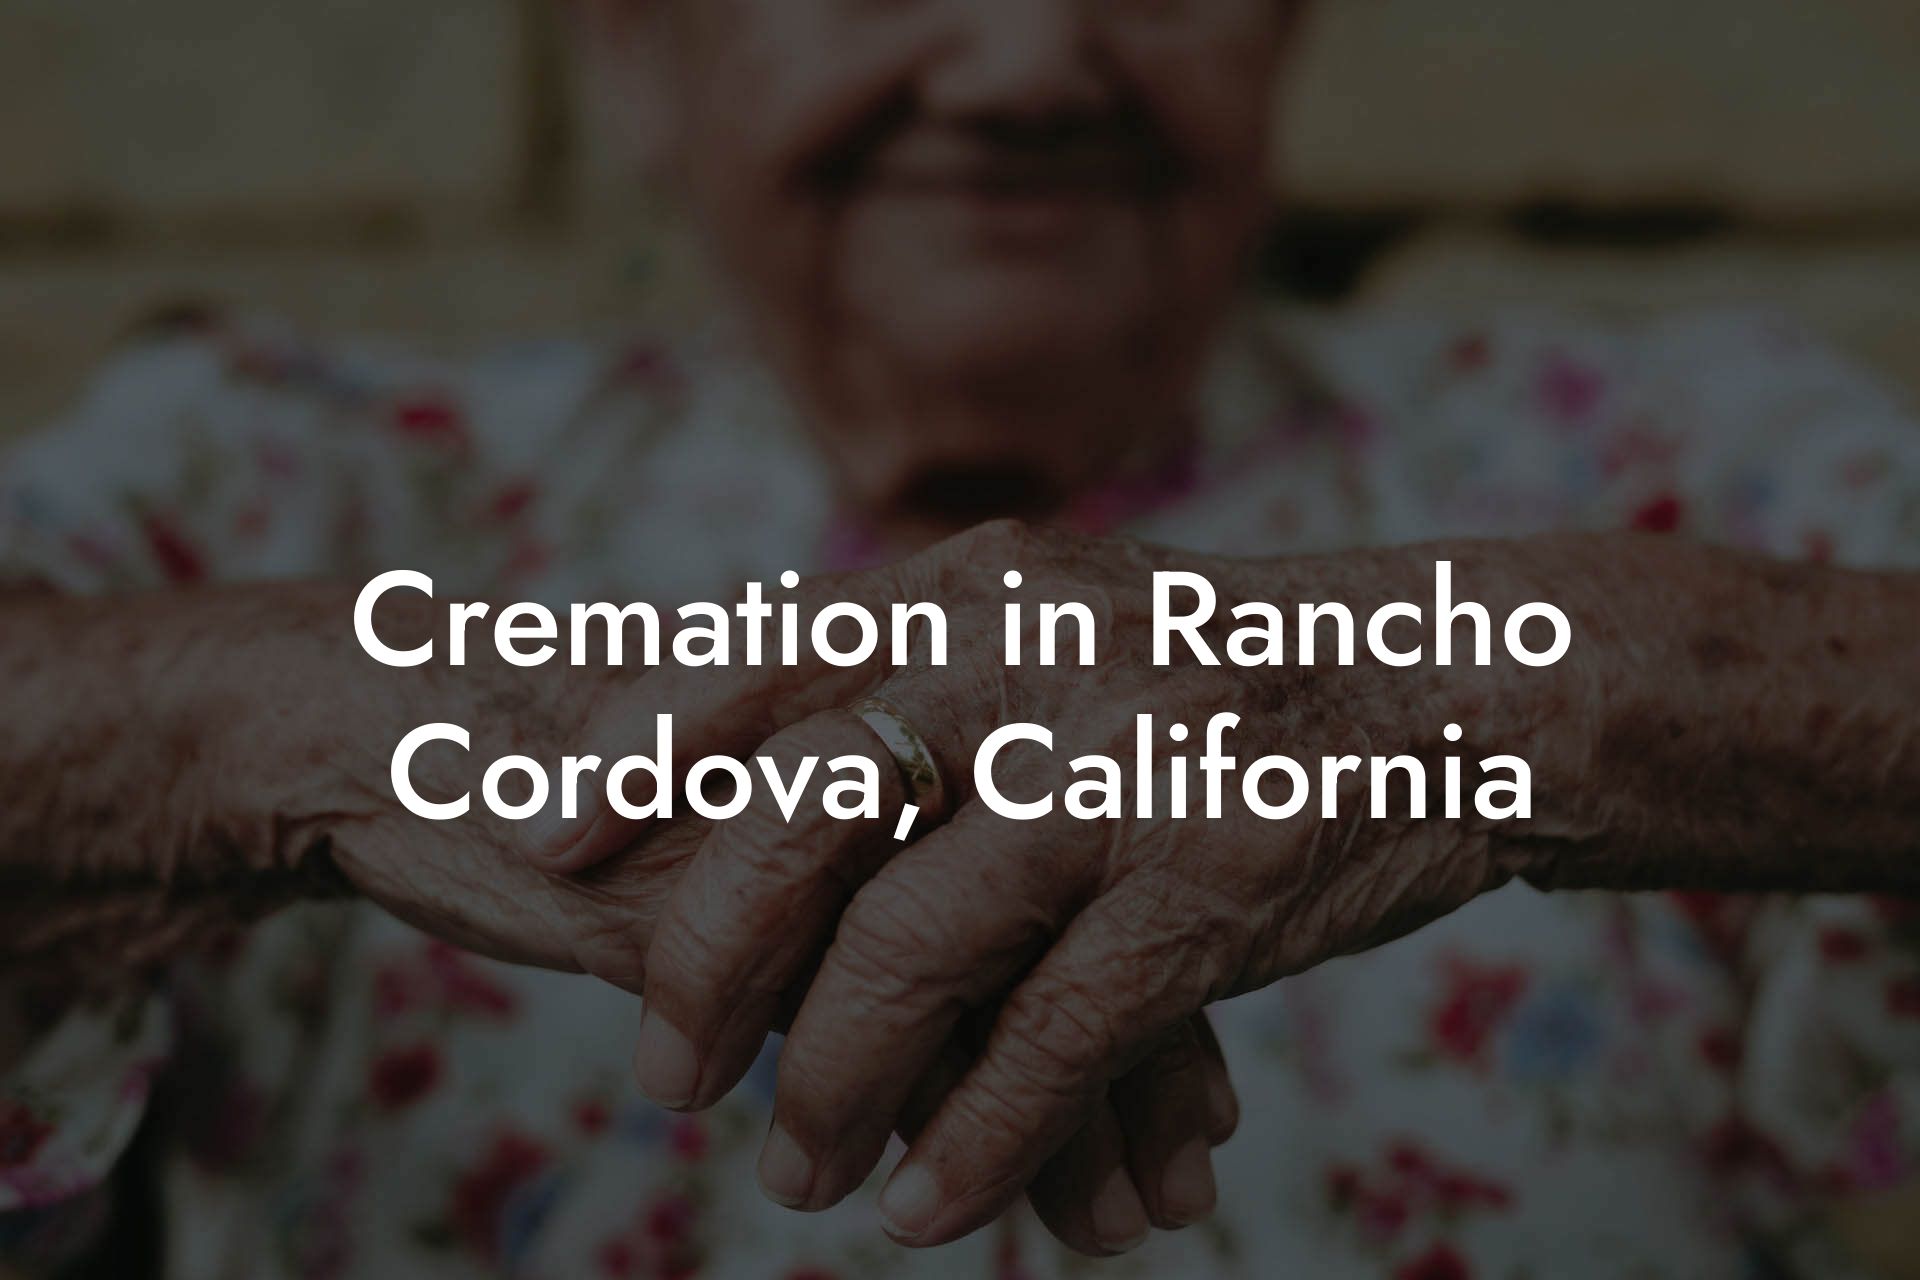 Cremation in Rancho Cordova, California